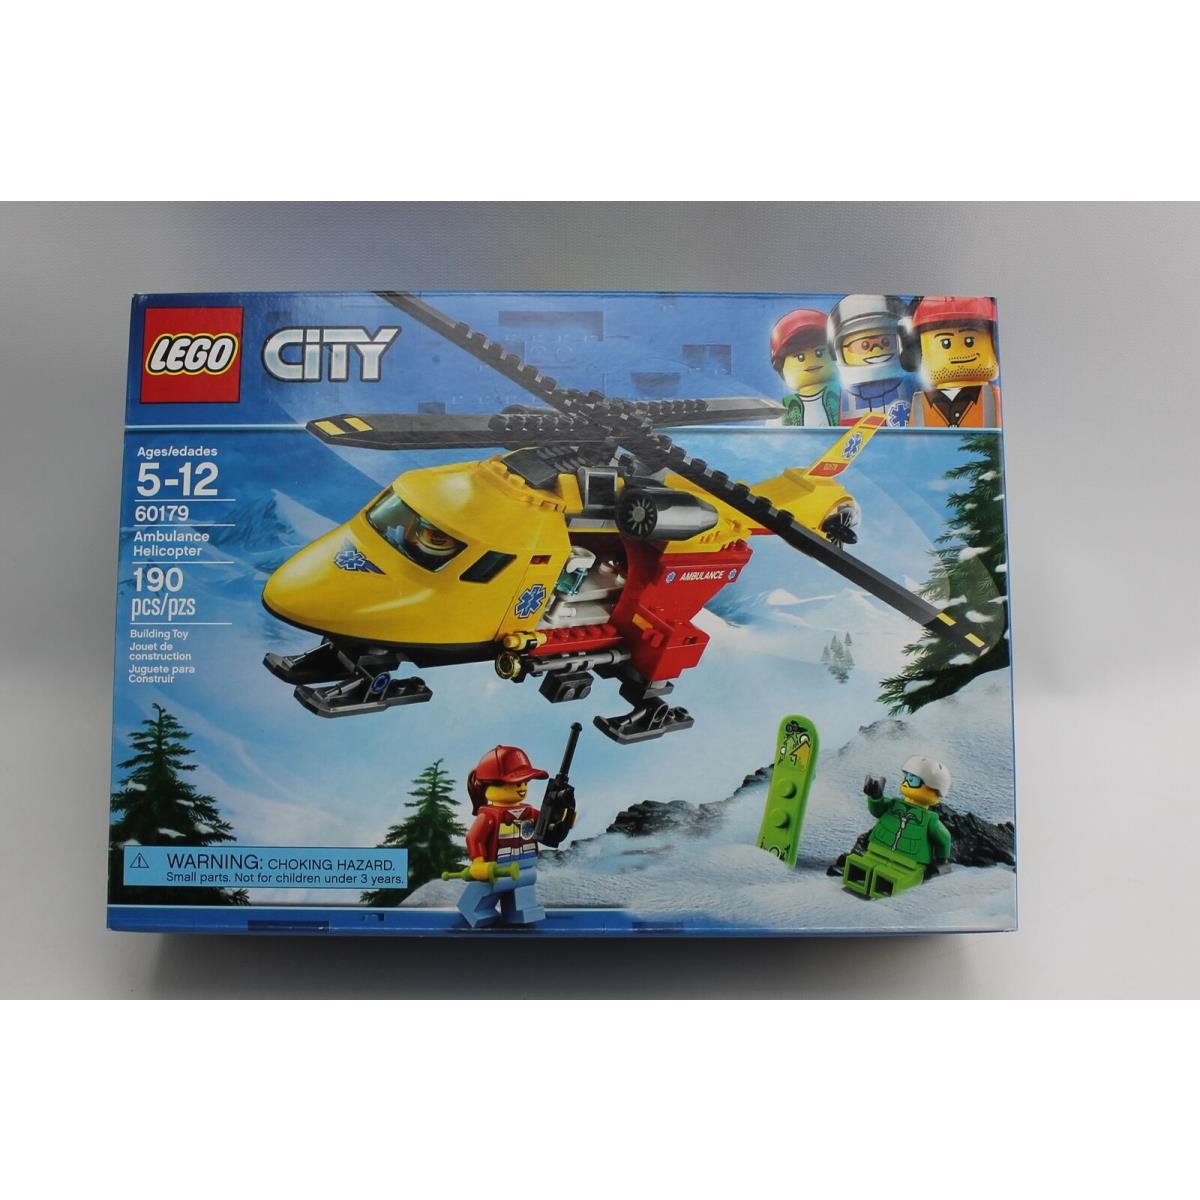 Lego City Ambulance Helicopter Set 60179